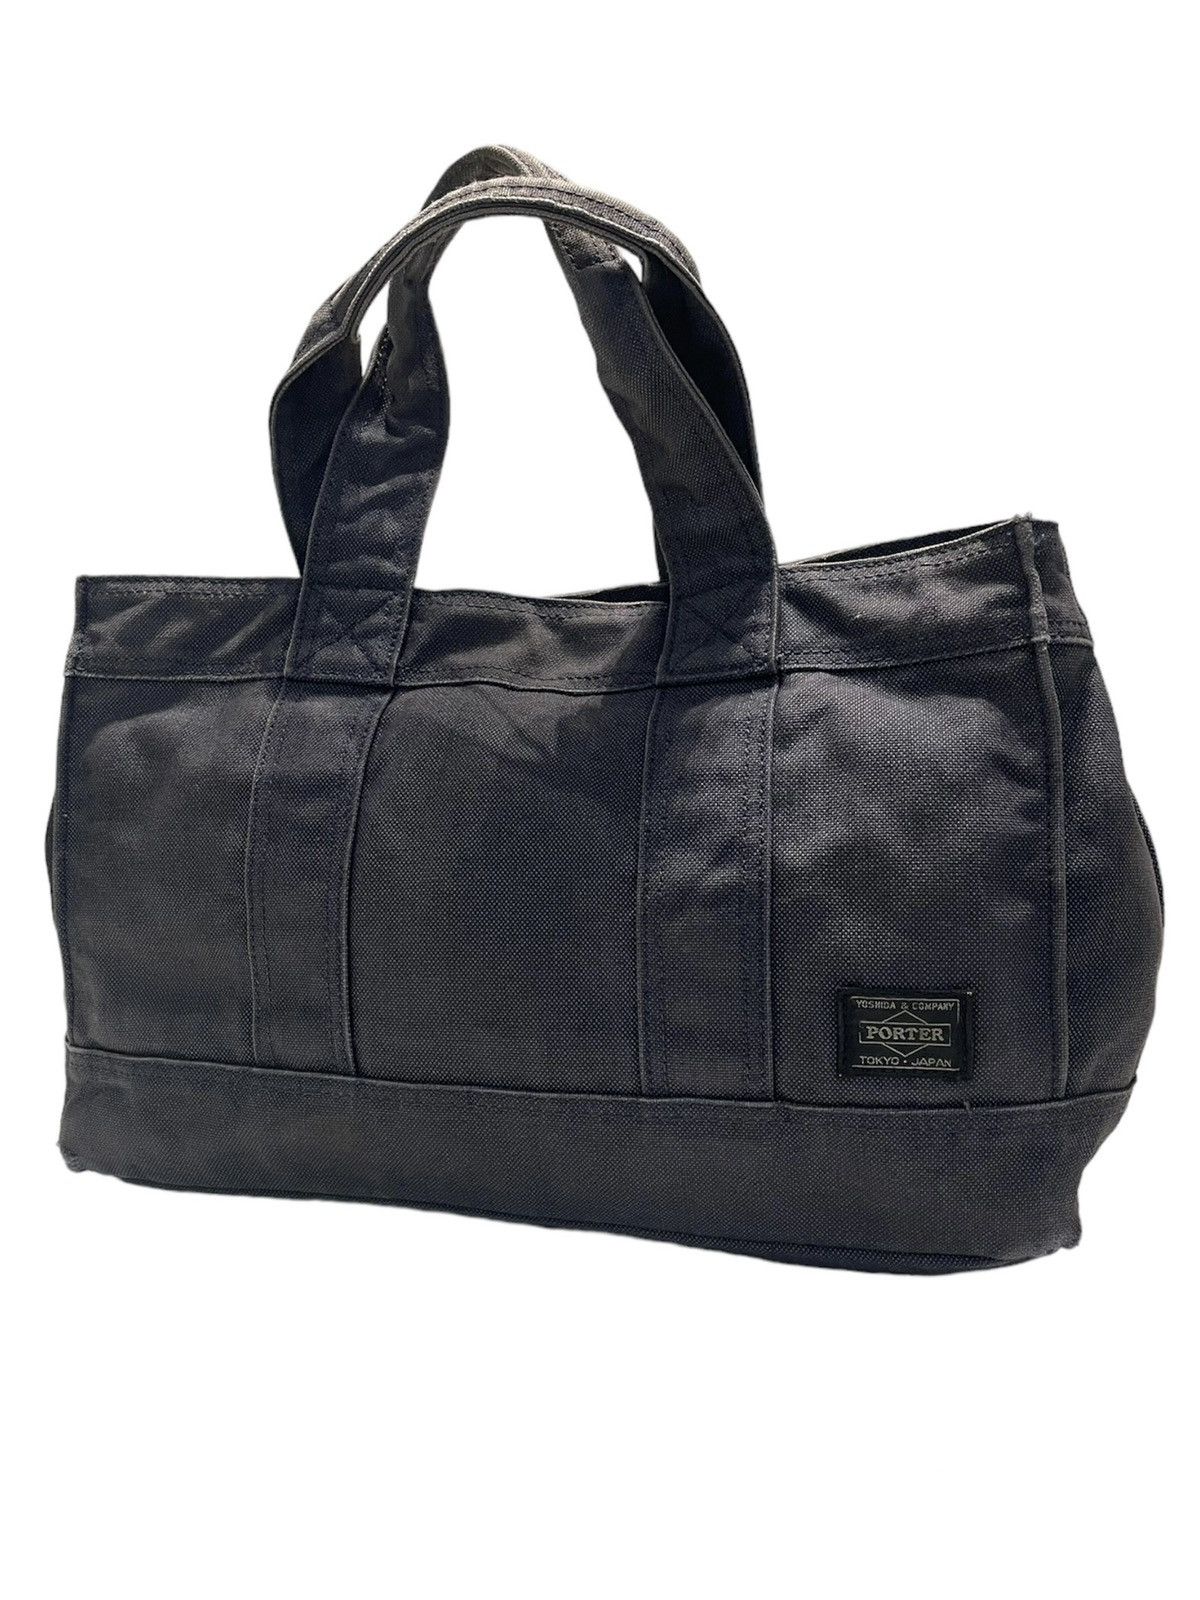 Porter Made In Japan Black Denim Tote Bag Denim Material - 1